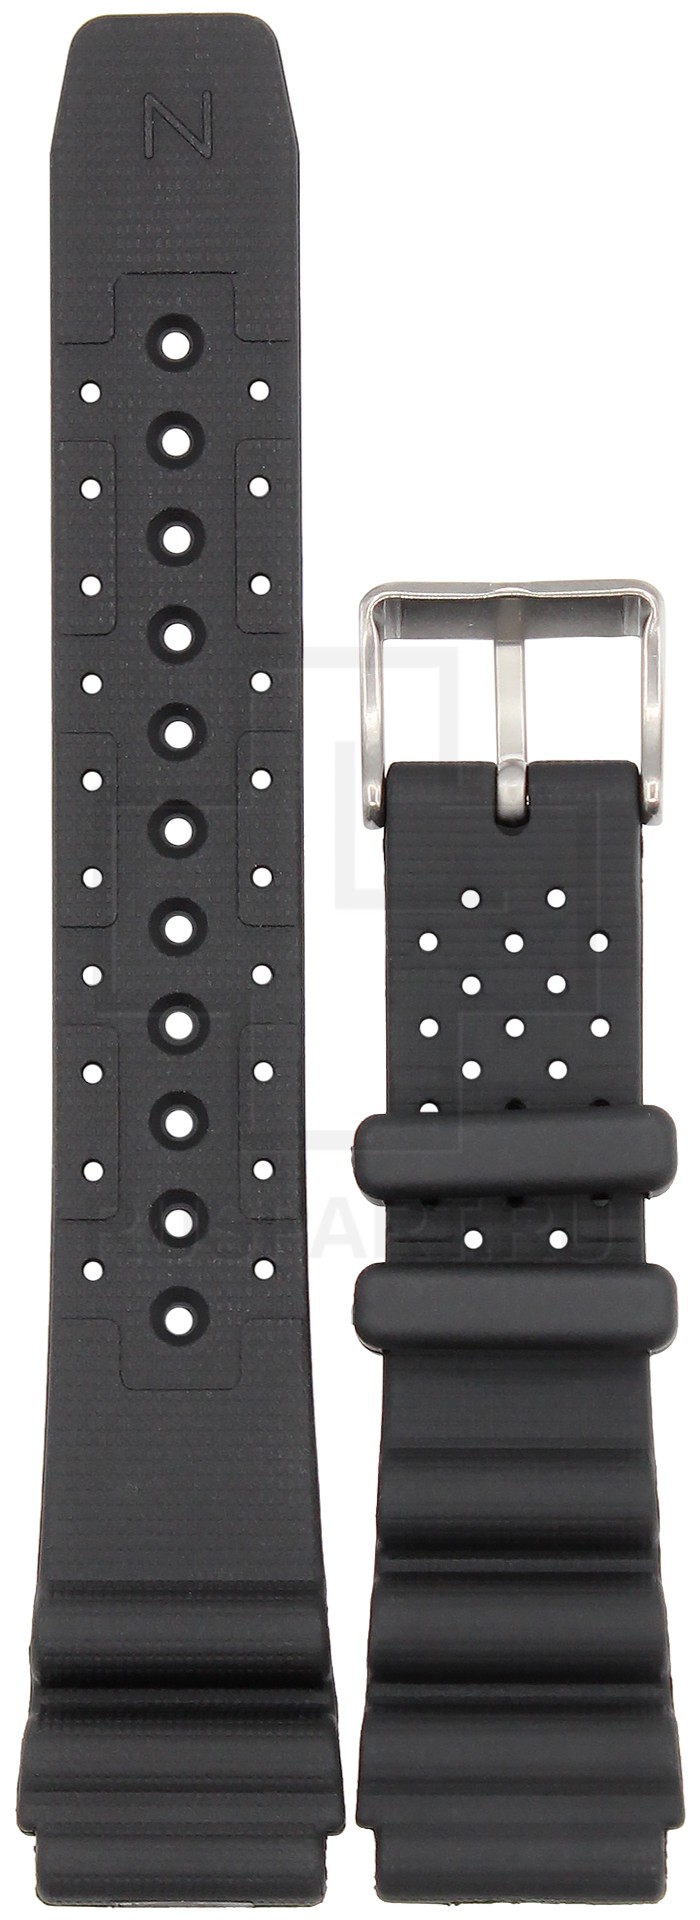 Ремешок для часов Citizen NY0087-13E (цвет: Черный, материал: Пластик) - купить в интернет-магазине Watchband.ru.